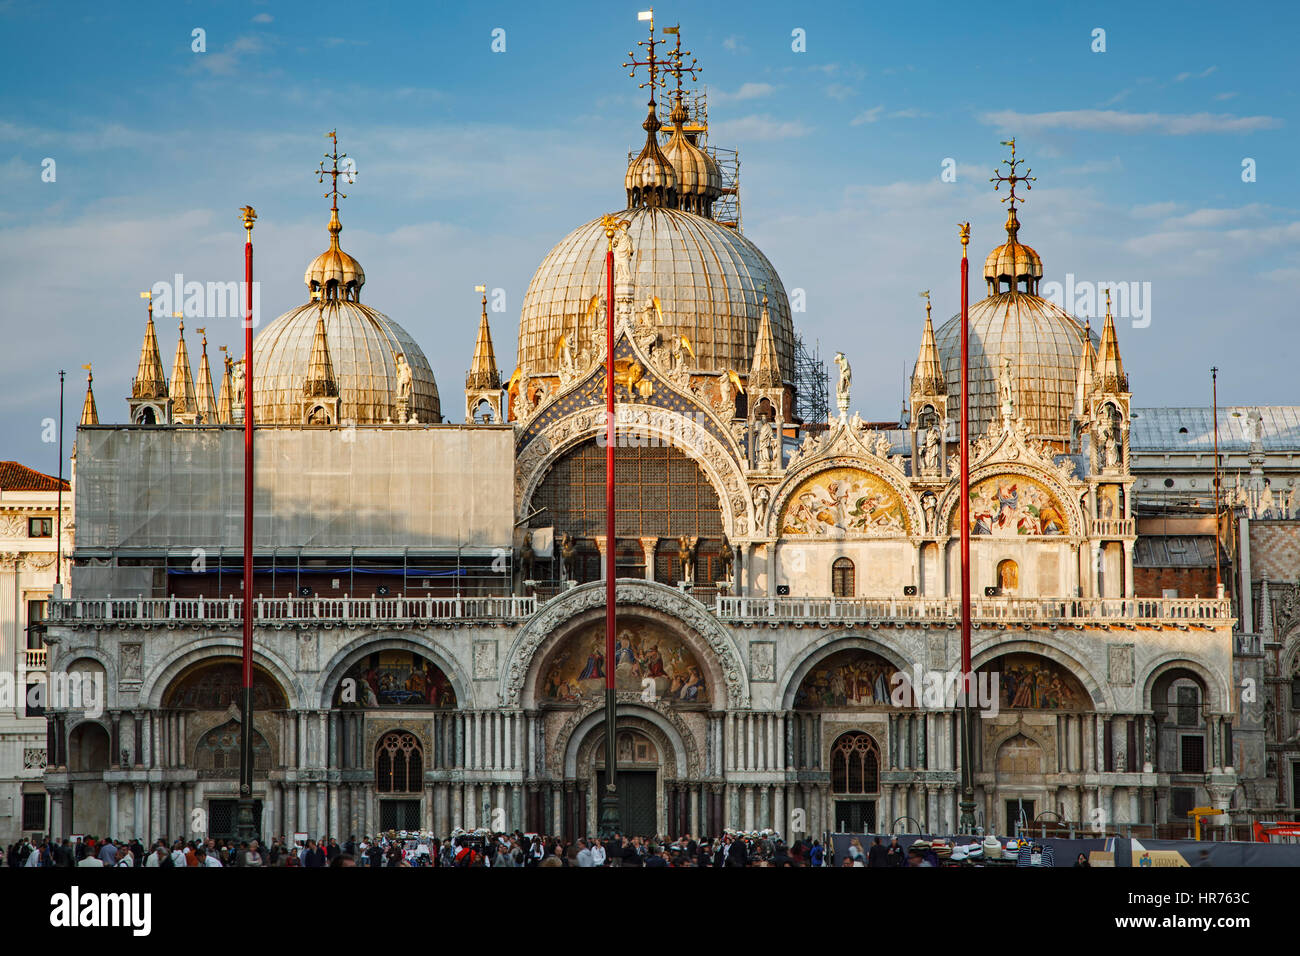 St. Mark's Basilica, St. Mark's Square, Venice, Italy Stock Photo